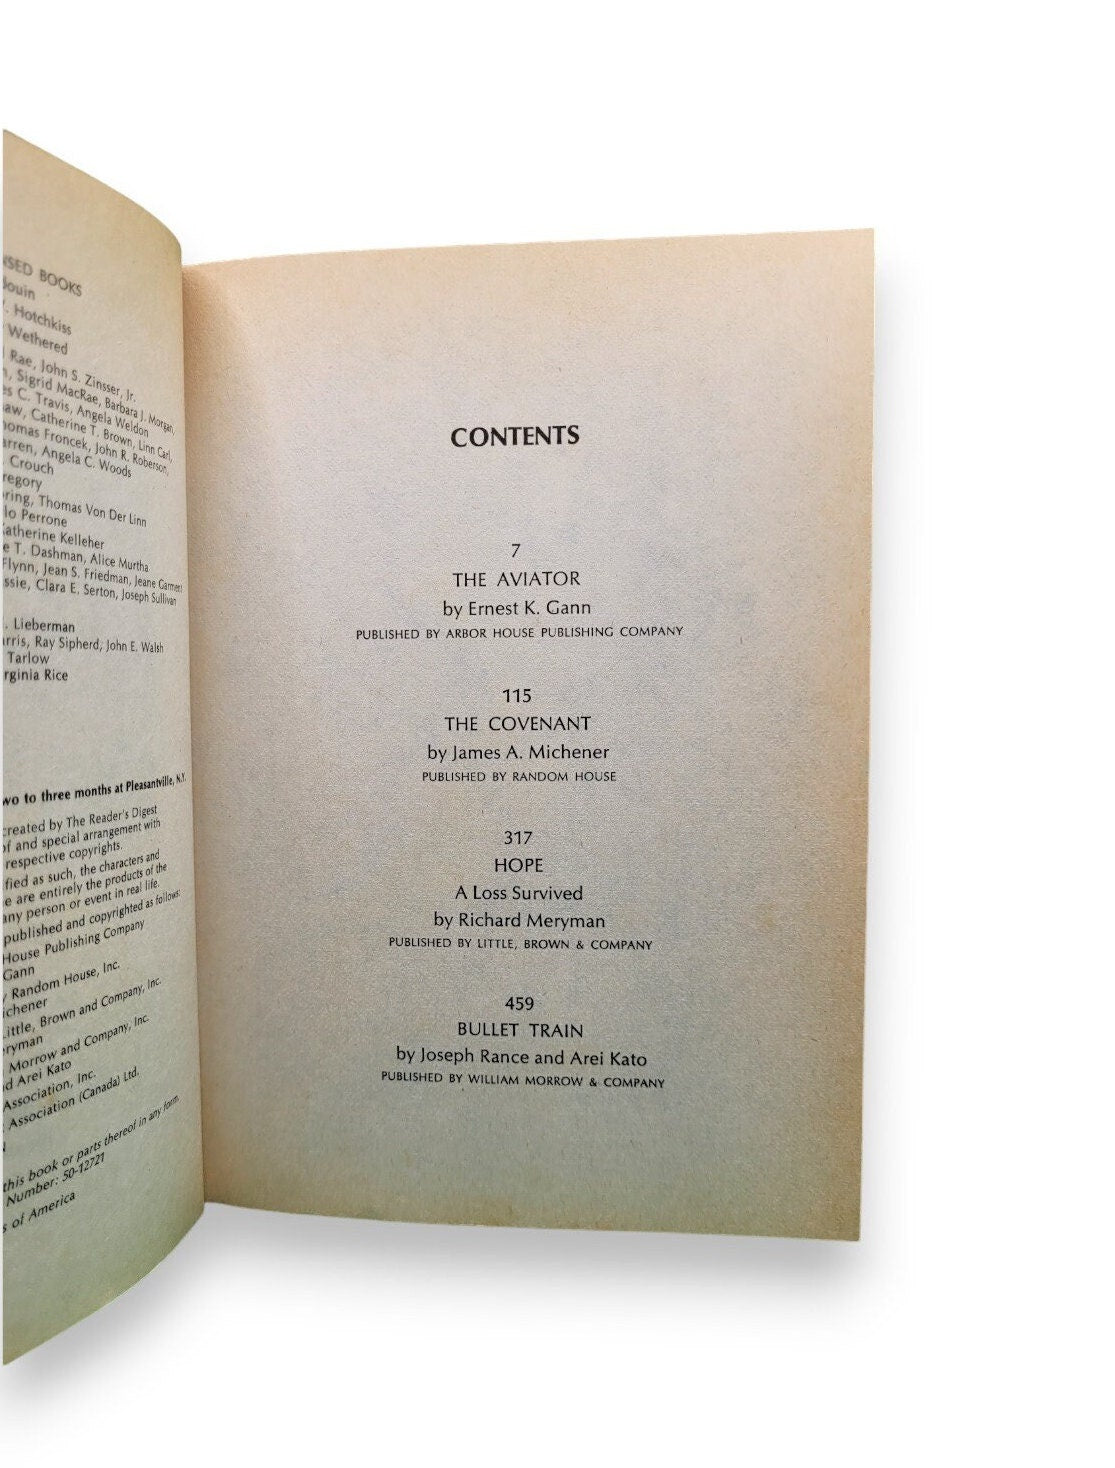 Reader's Digest Condensed Books: Volume 1 1981